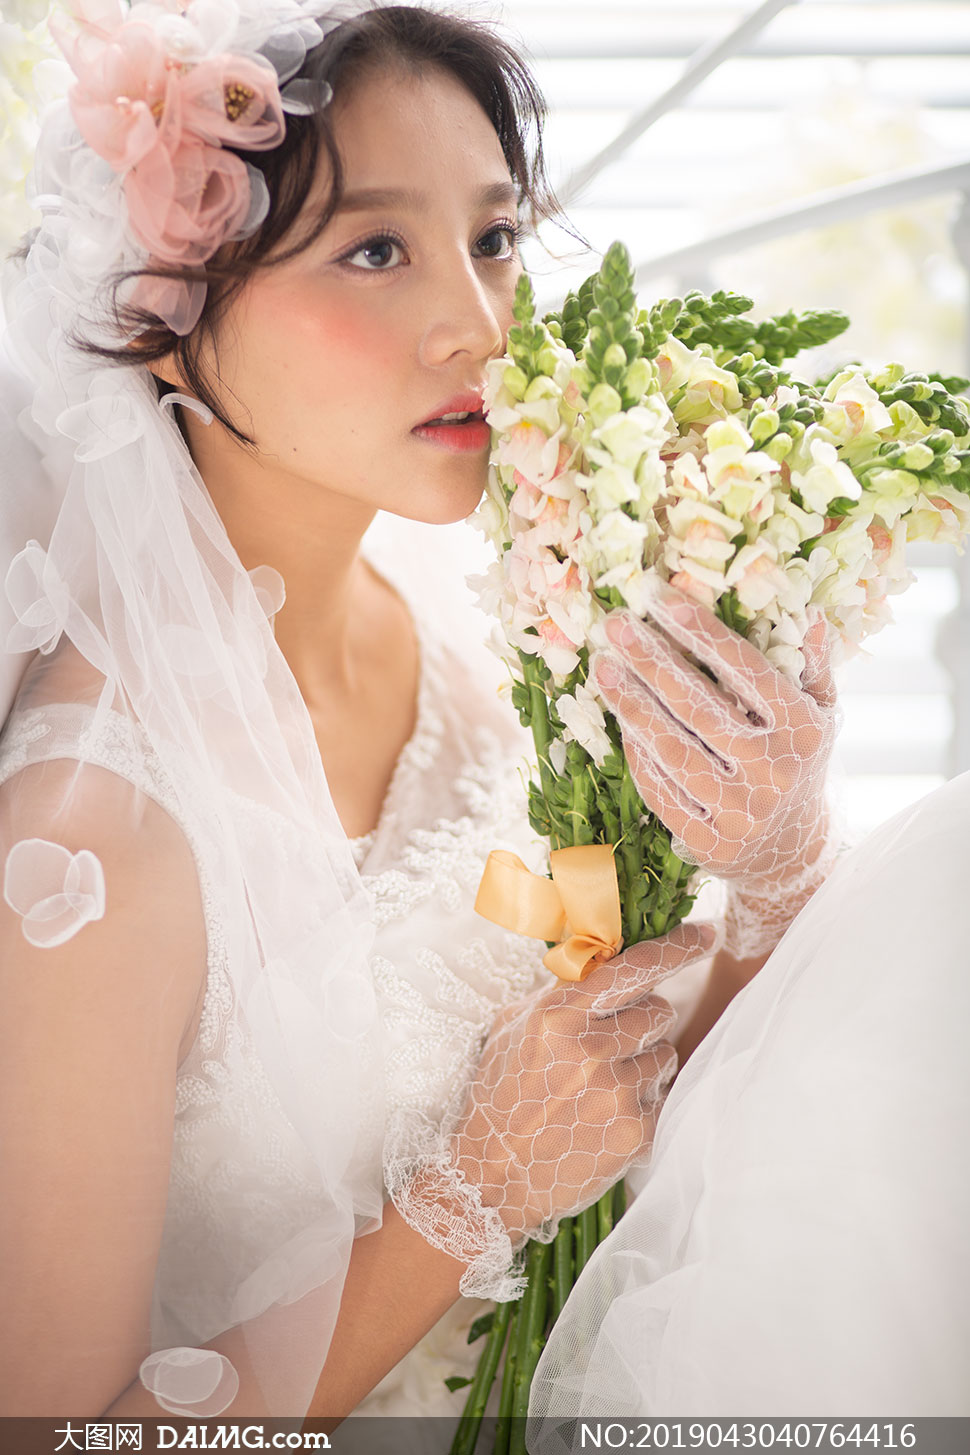 手着拿鲜花的美女婚纱摄影原片素材